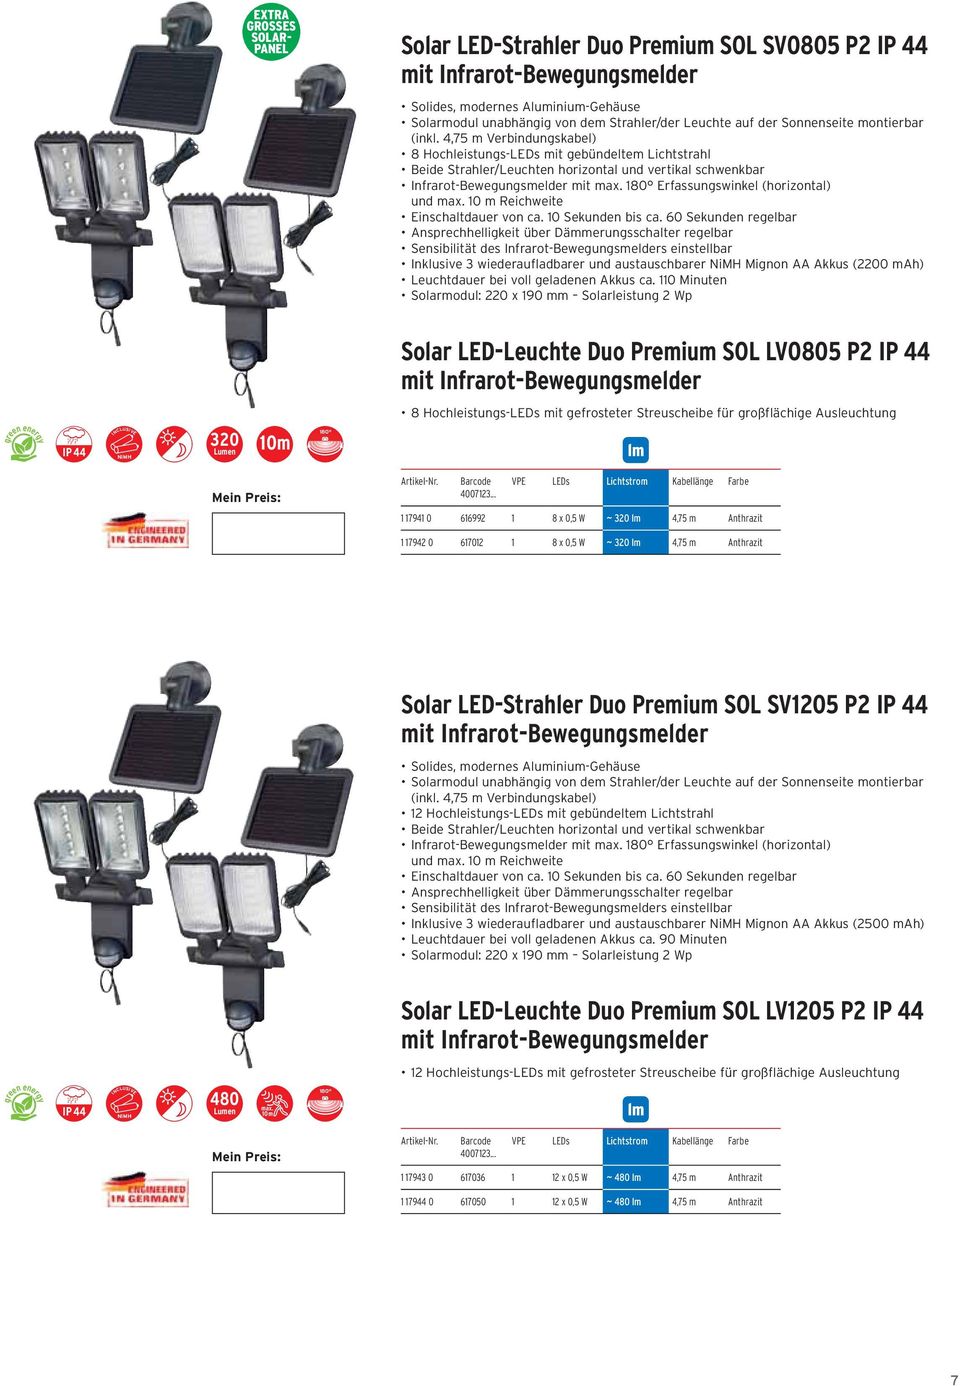 m Anthrazit Solar LED-Strahler Duo Premium SOL SV1205 P2 Solar LED-Leuchte Duo Premium SOL LV1205 P2 480 max.